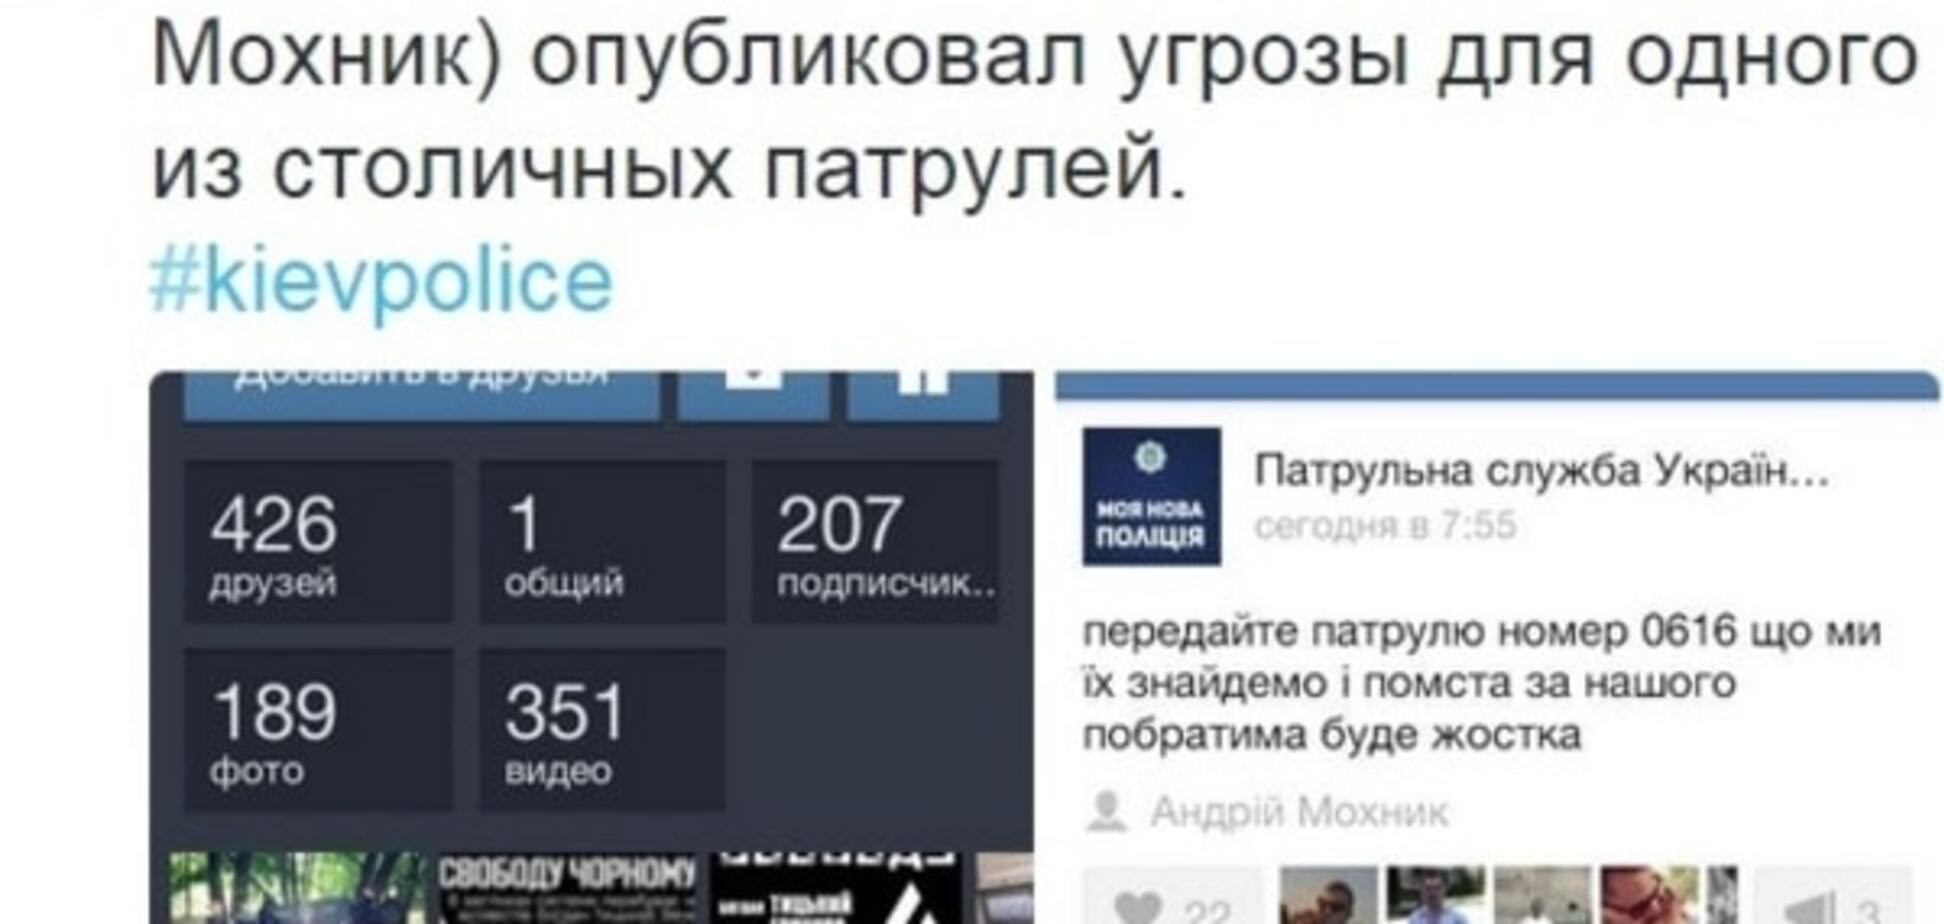 В соцсети появилась угроза киевским полицейским: месть будет жестокая